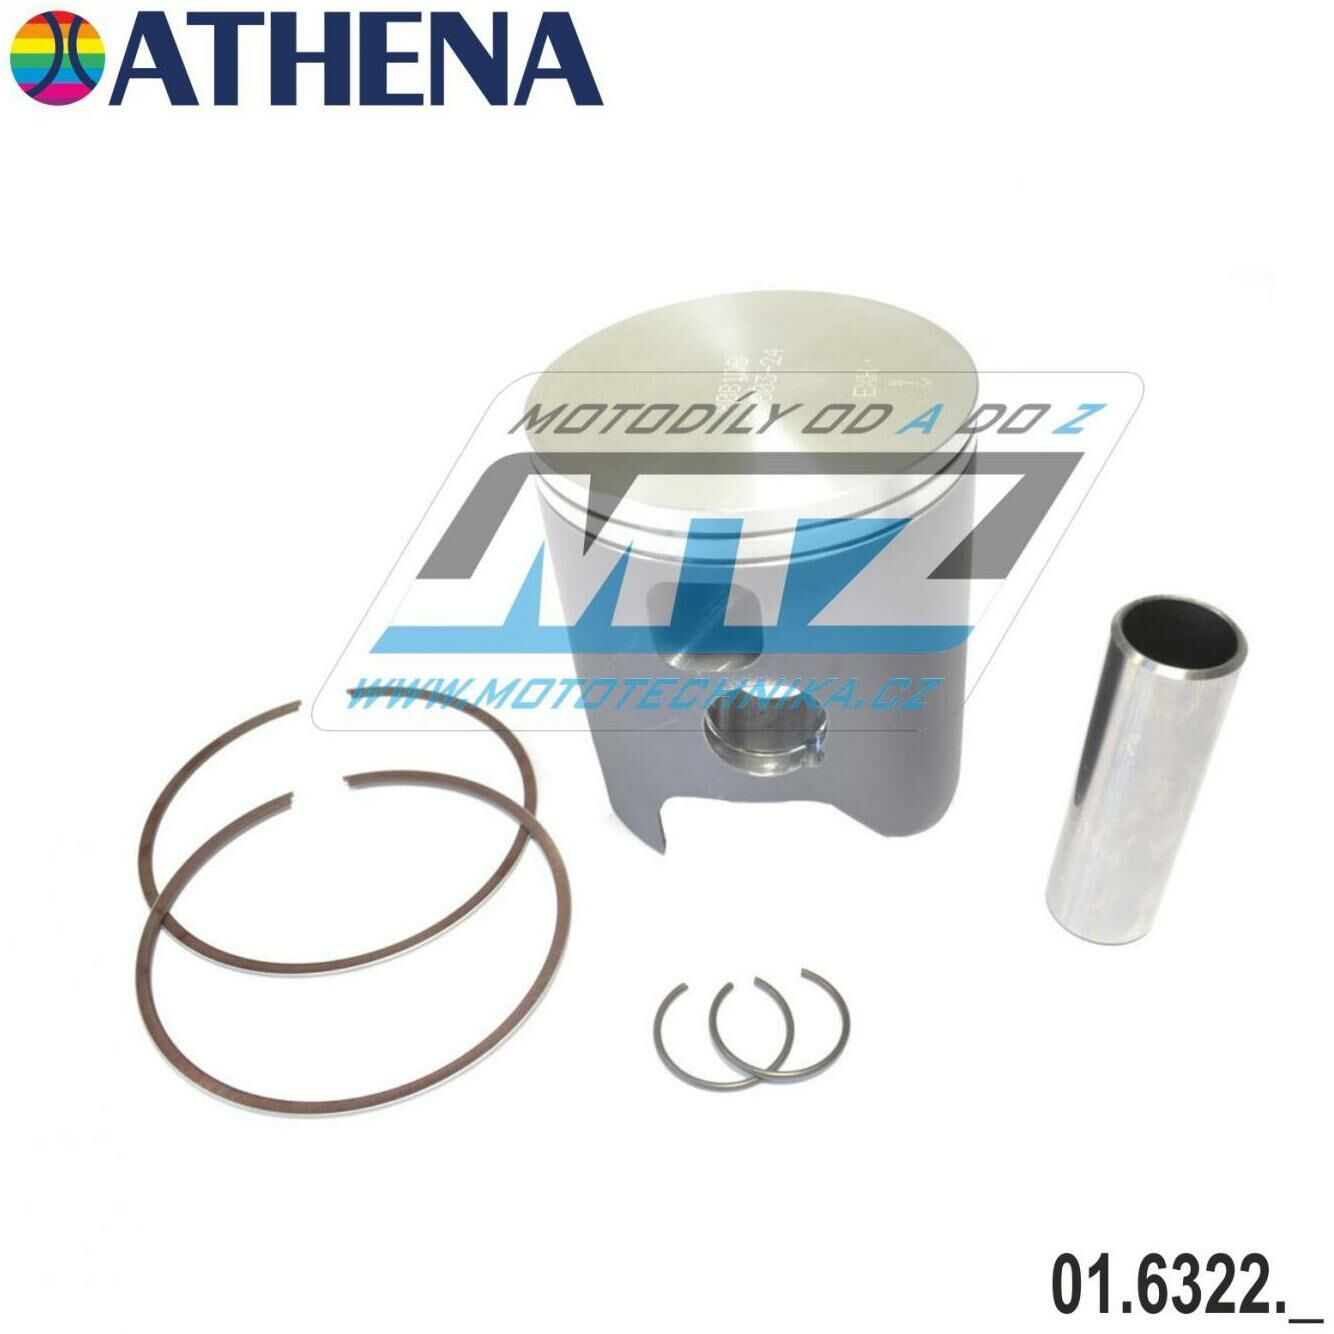 Obrázek produktu Pístní sada KTM 250EXC / 00-05 - rozměr 66,34mm (Athena S4F06640012A) (6322-a) 01.6322.A-AT